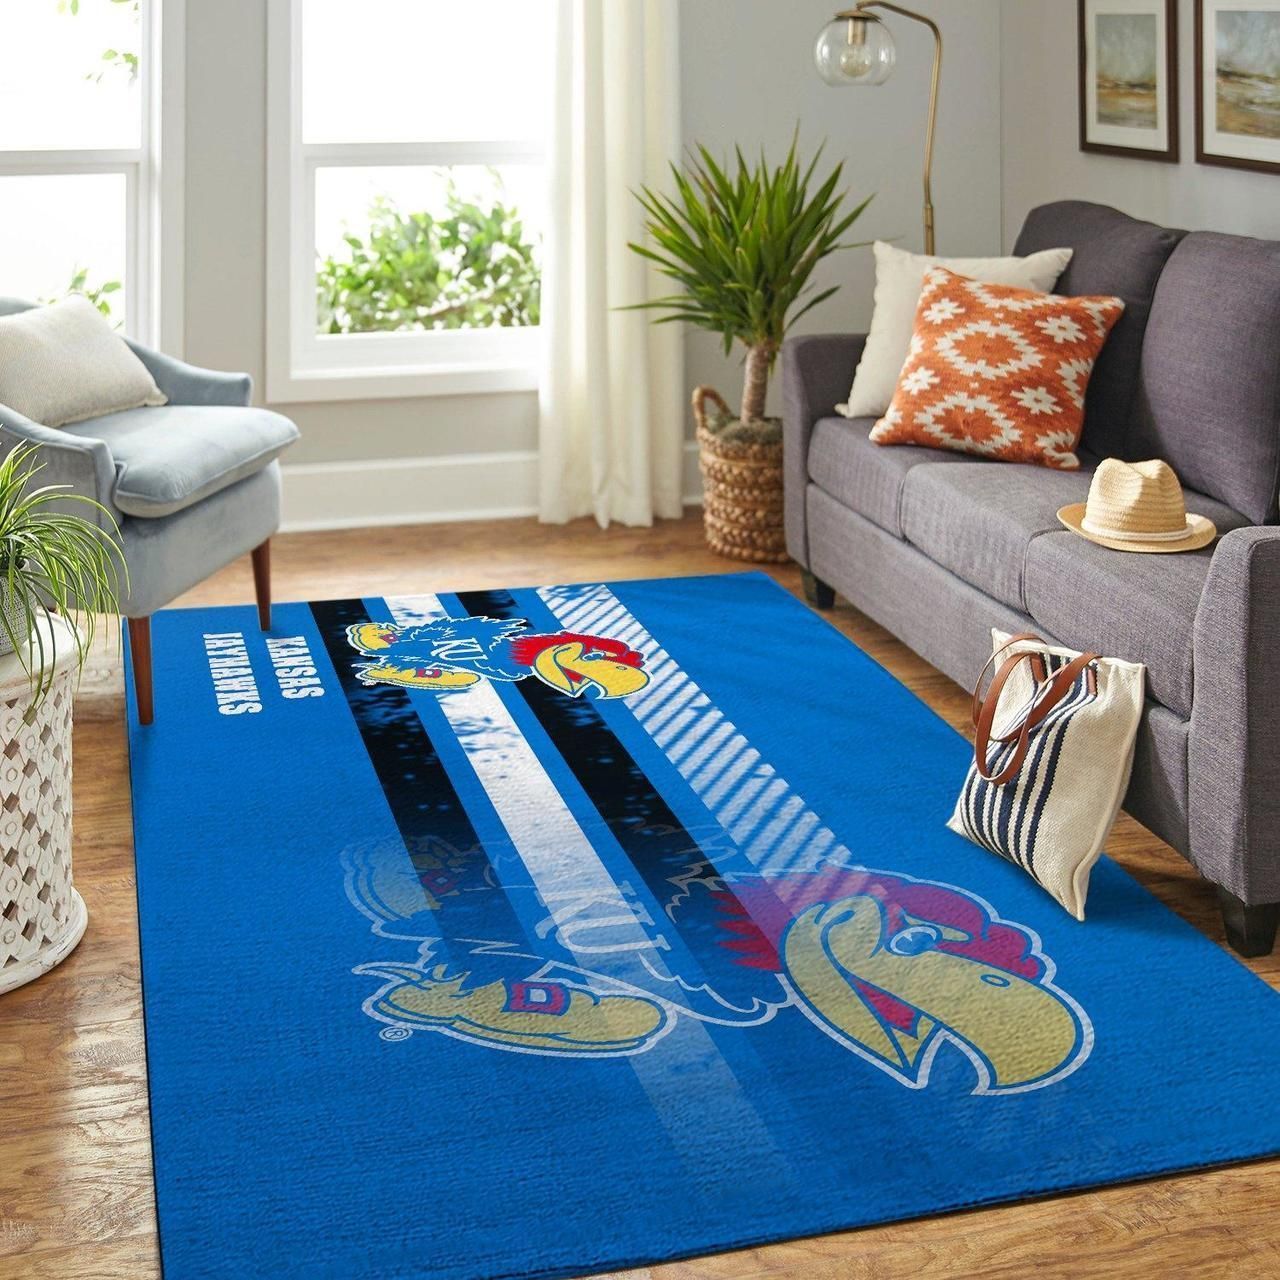 Kansas Jayhawks Rug Room Carpet Custom Ncaa Floor Mat Home Decor - Indoor Outdoor Rugs